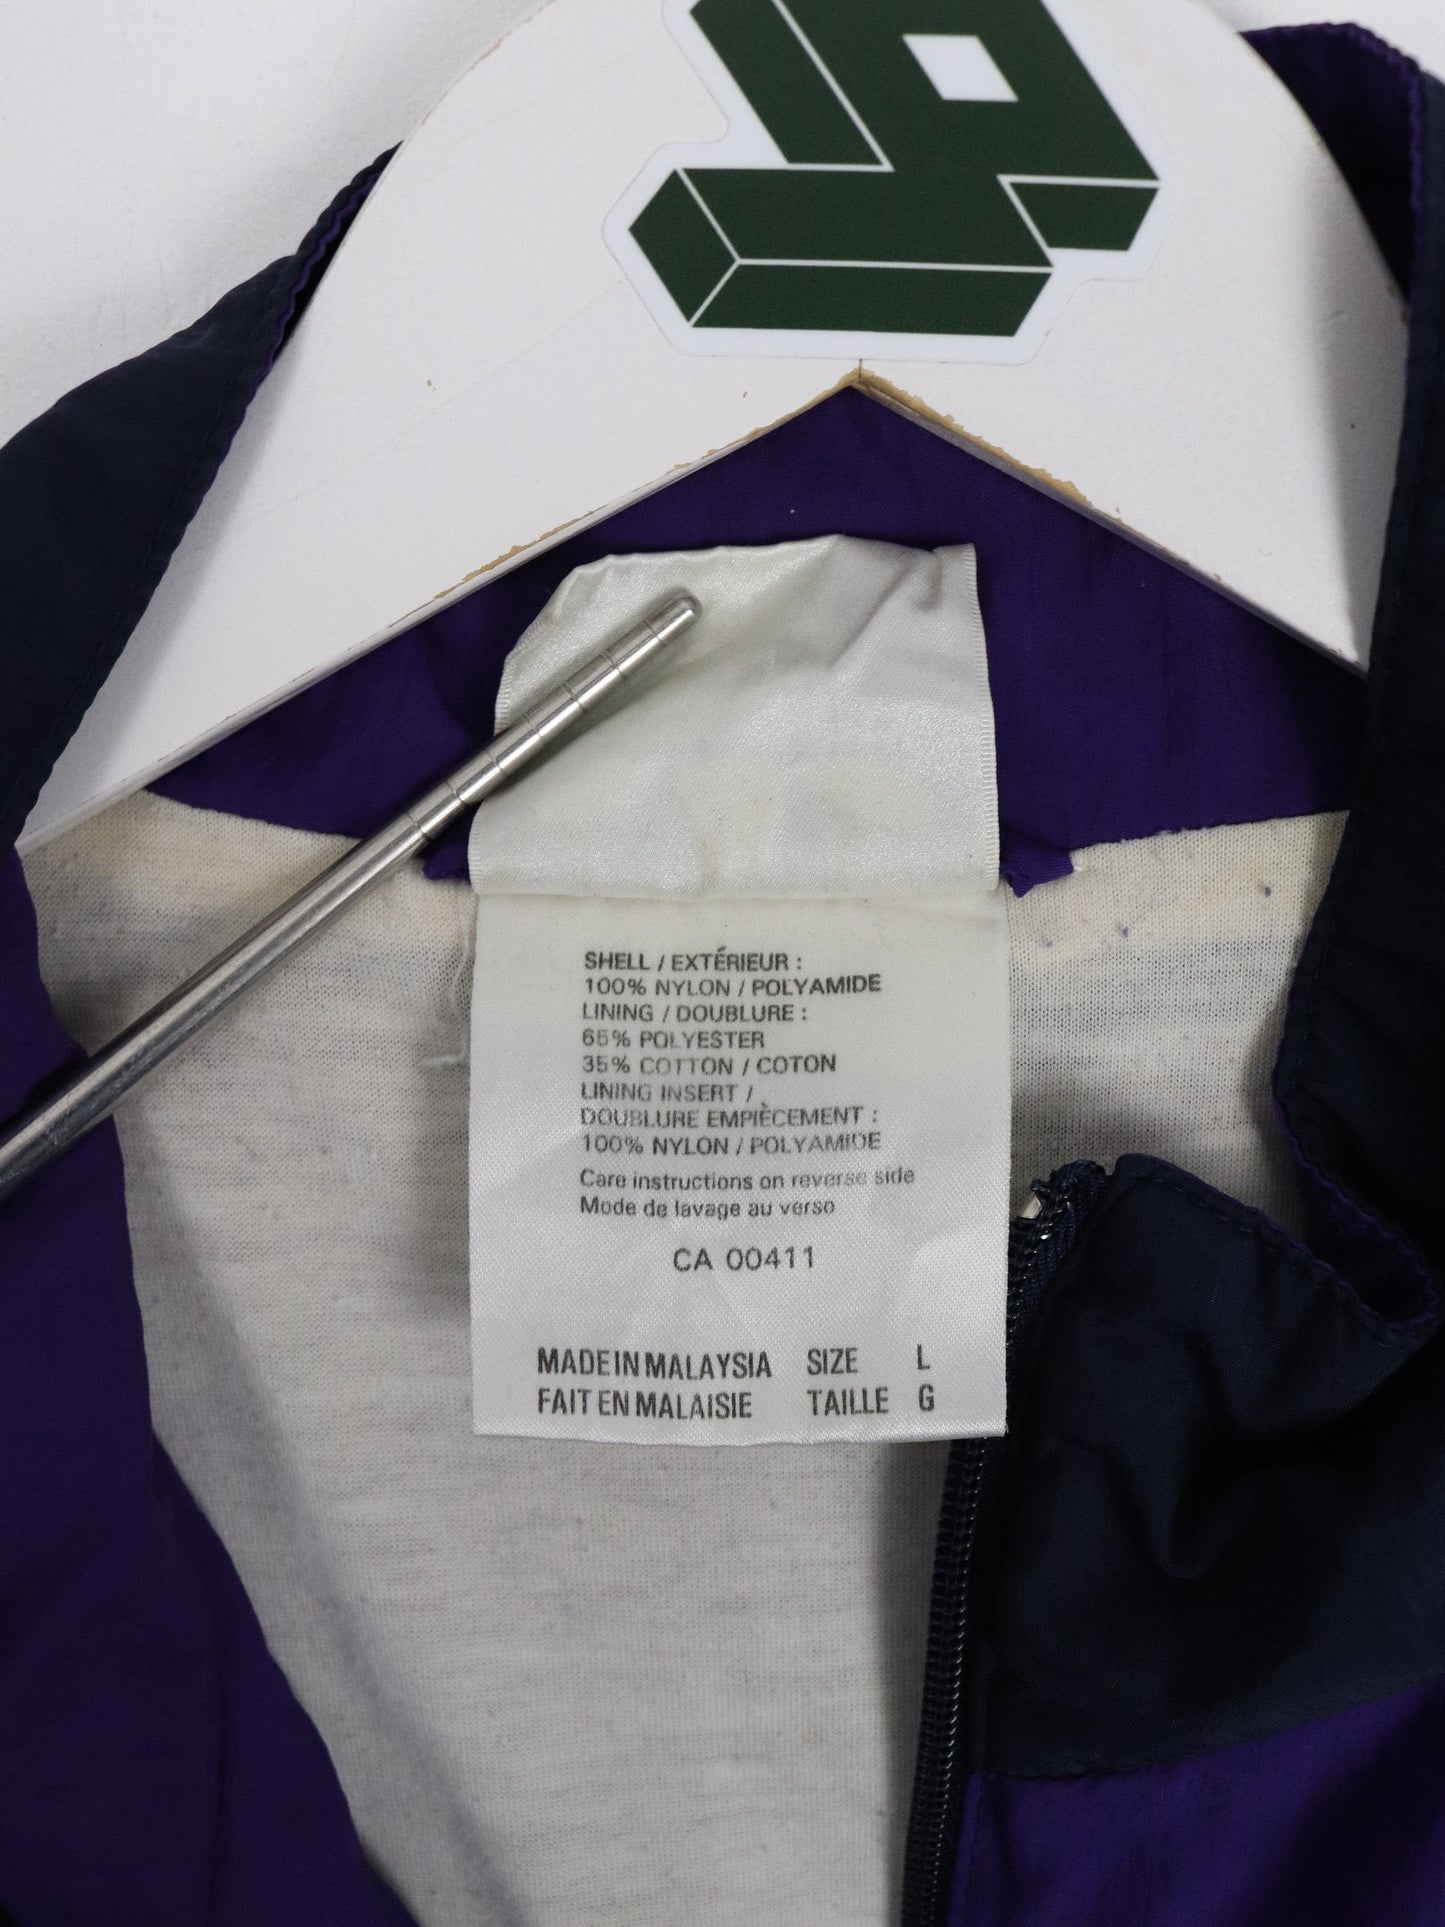 Adidas Windbreakers Vintage Adidas Jacket Mens Large Purple Trefoil Windbreaker